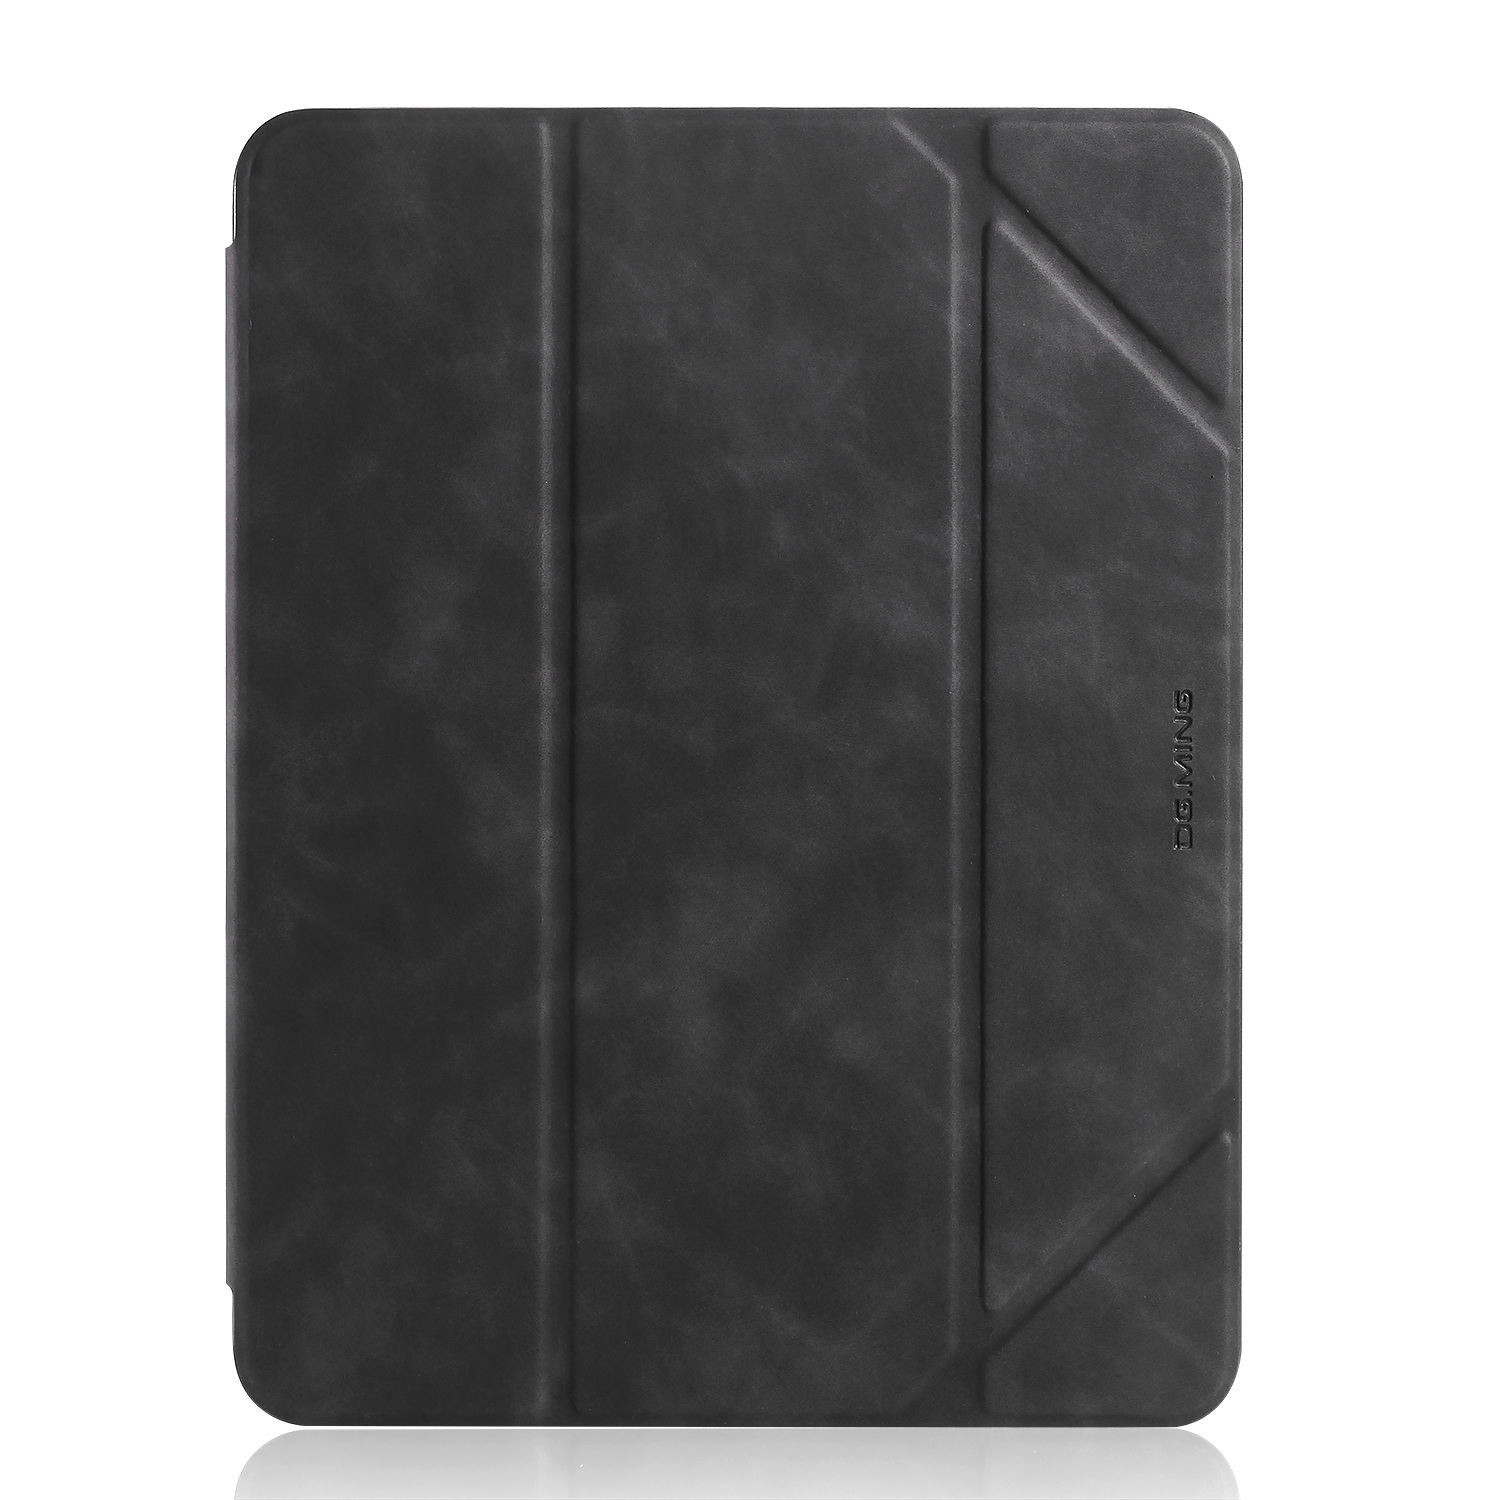 DG.MING Retro Style fodral till iPad Pro 10.5/iPad Air 3, svart